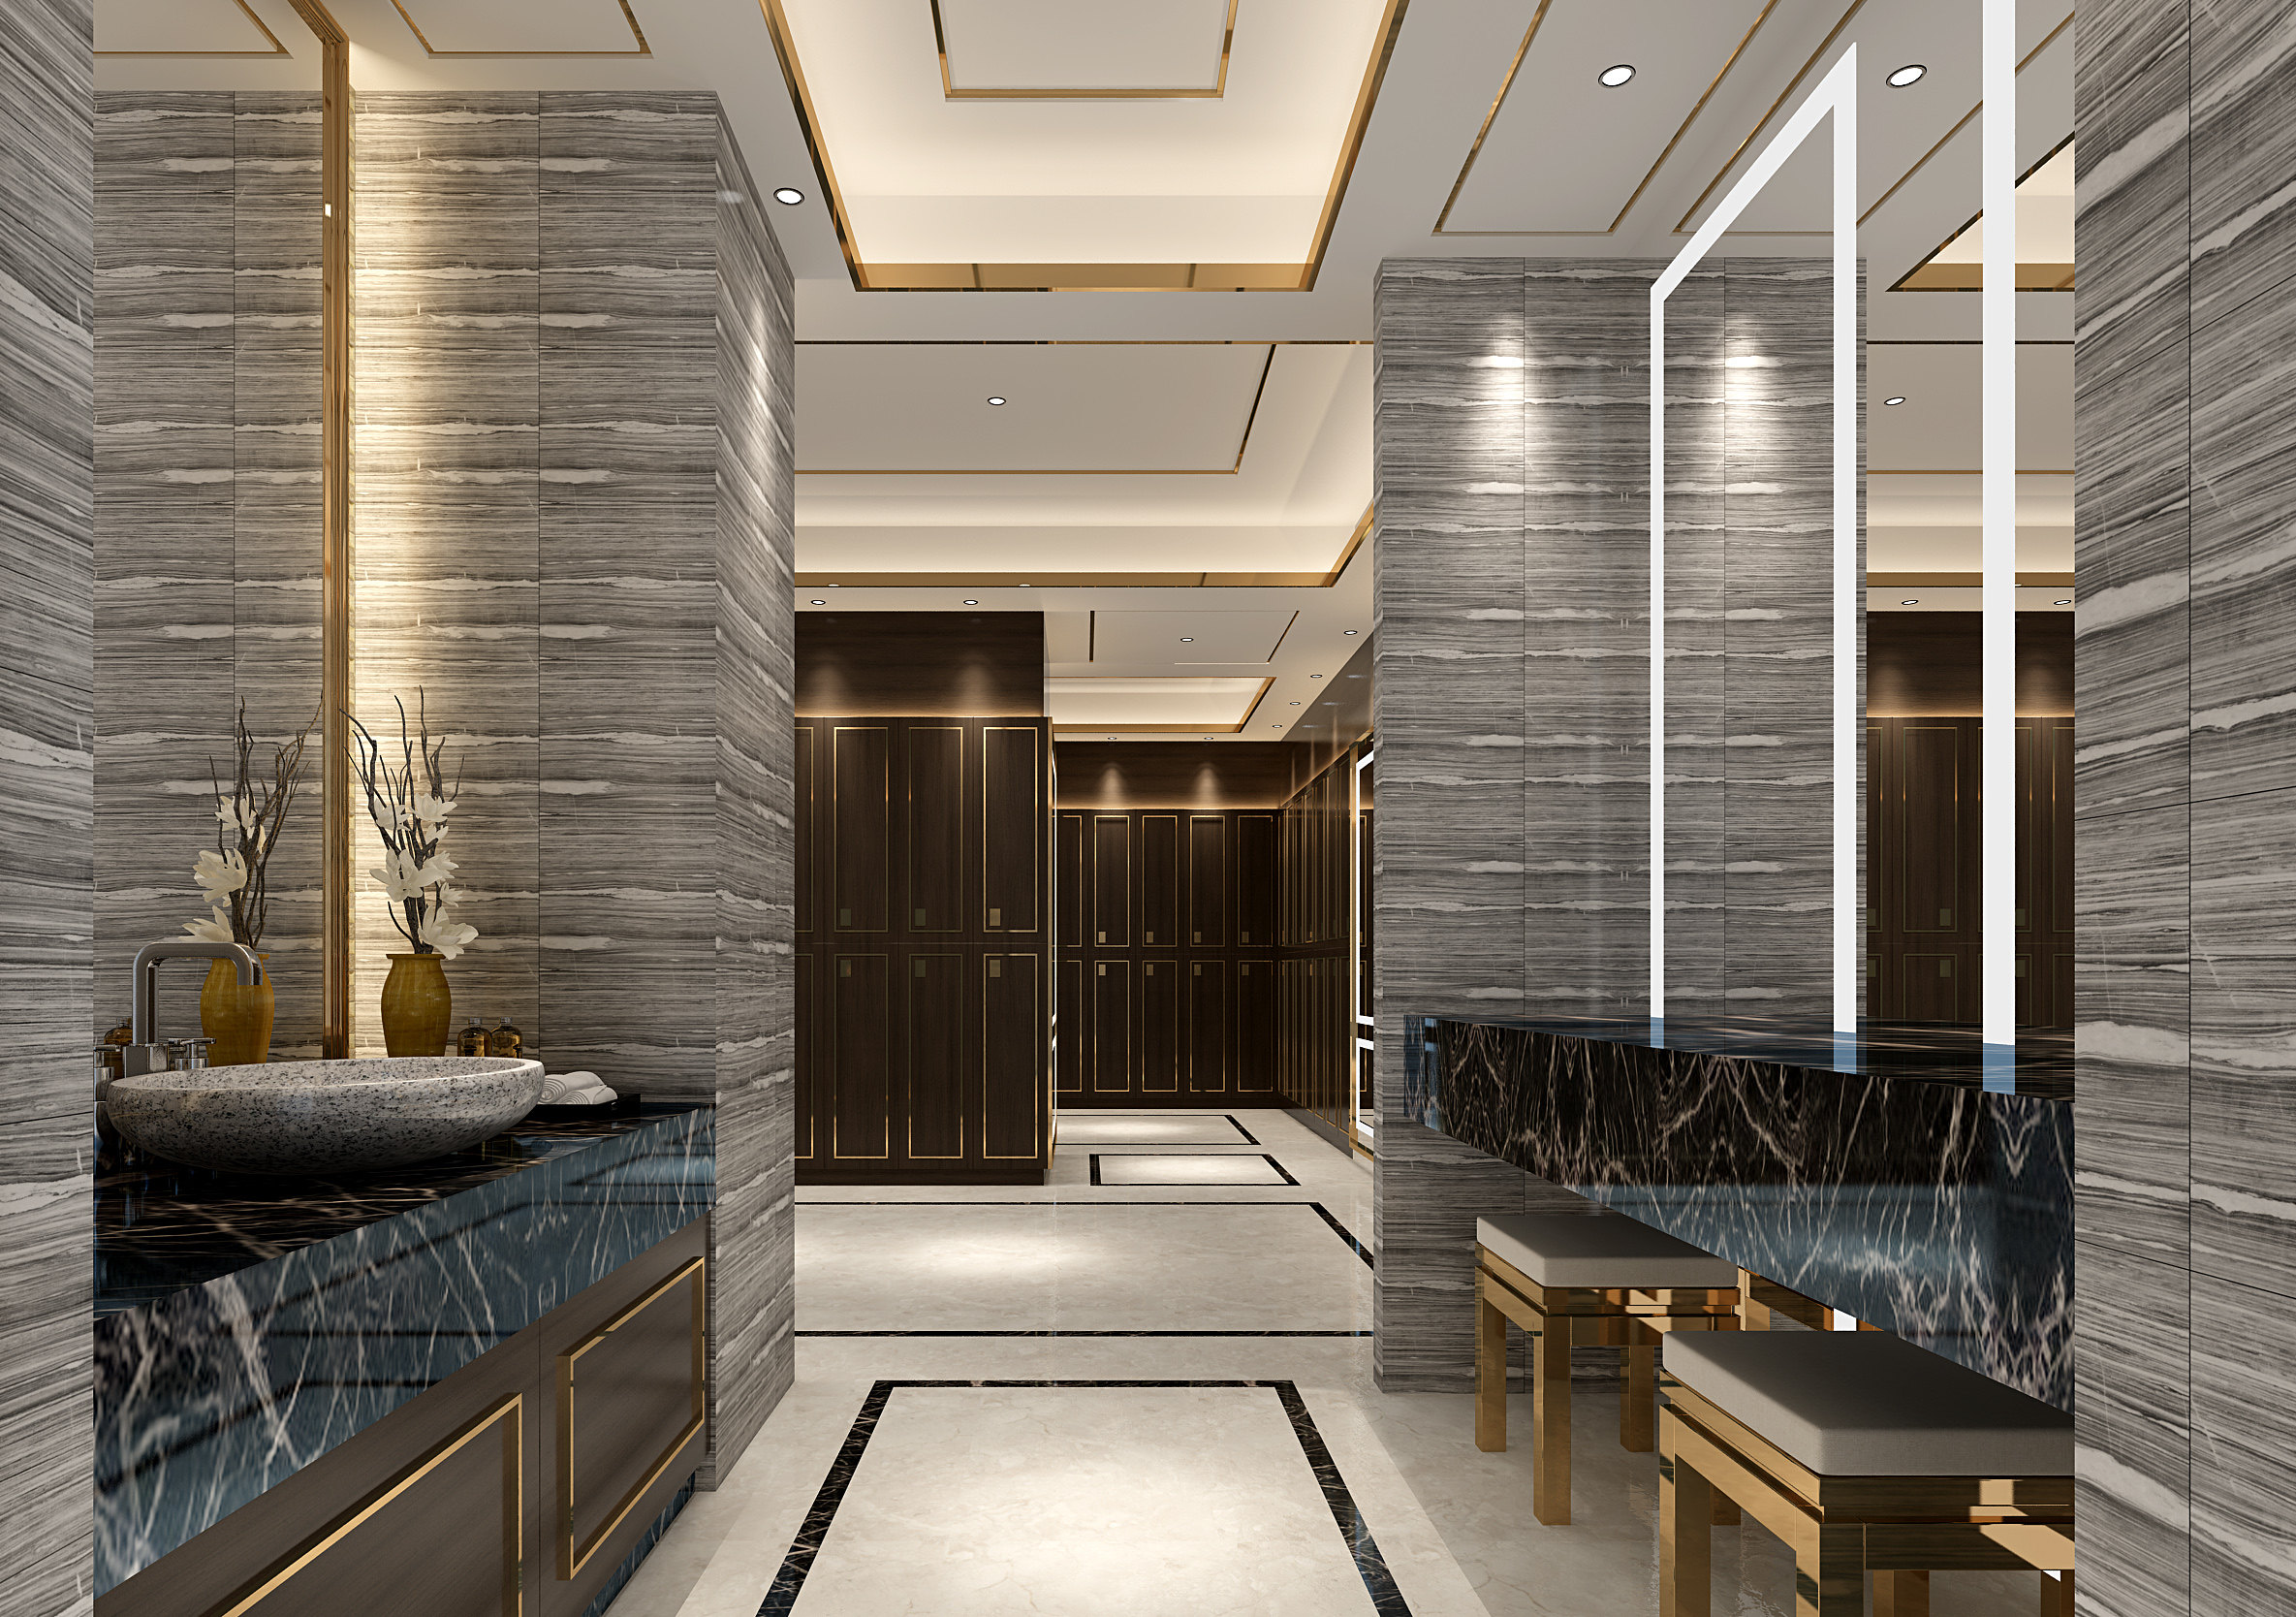 新中式公共卫生间 更衣室 3d模型下载